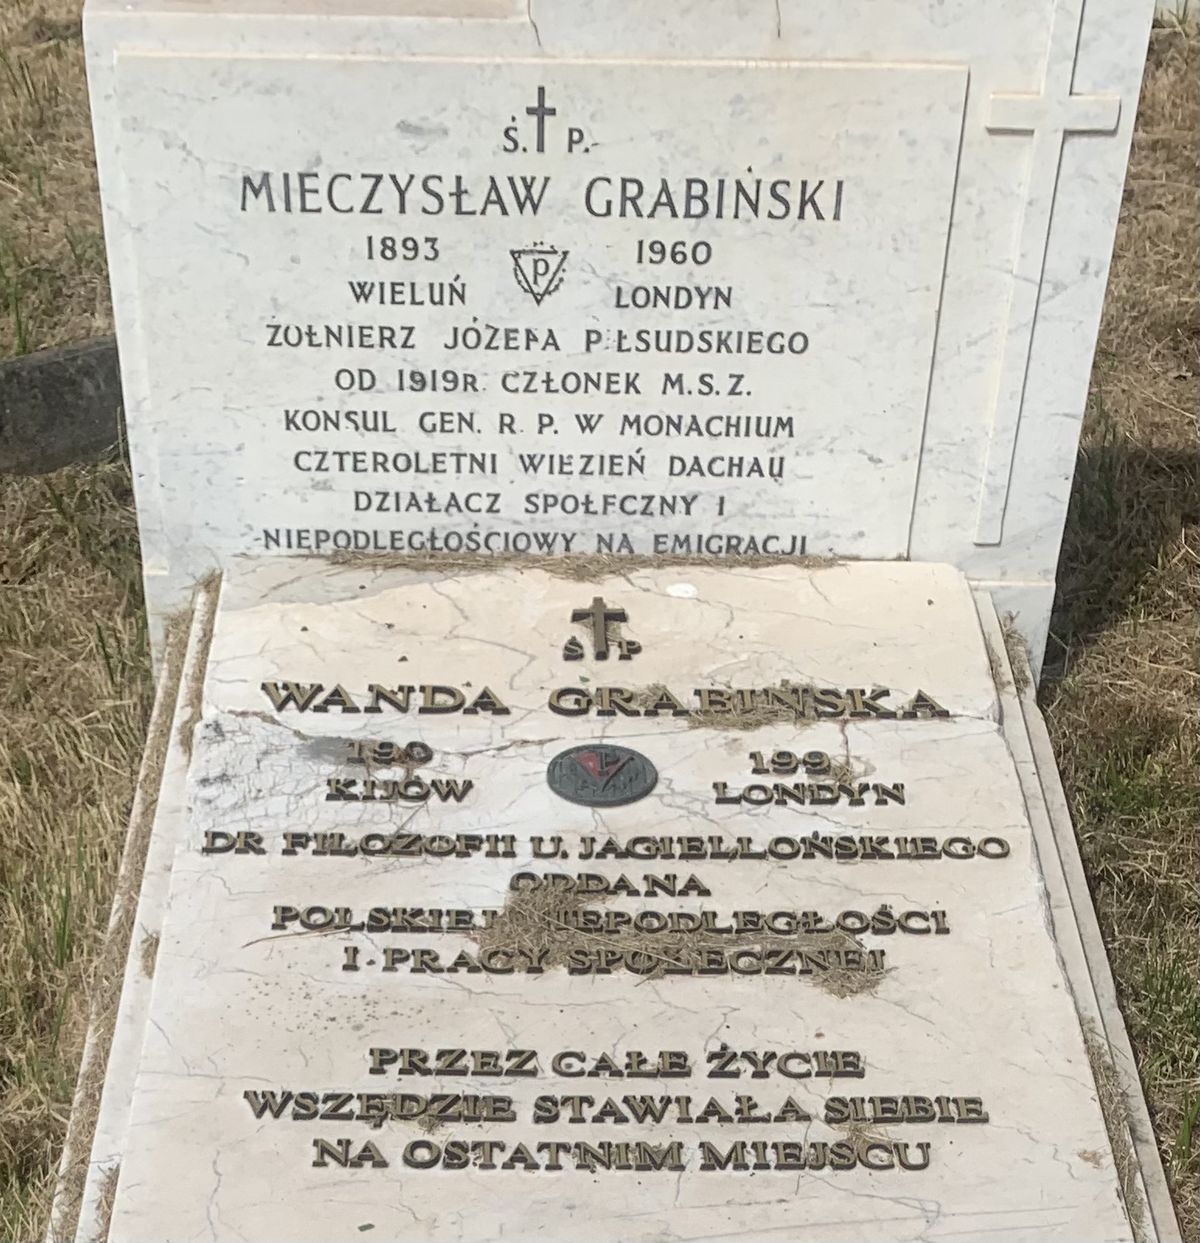 Tombstone of Wanda Grabińska and Mieczysław Grabiński